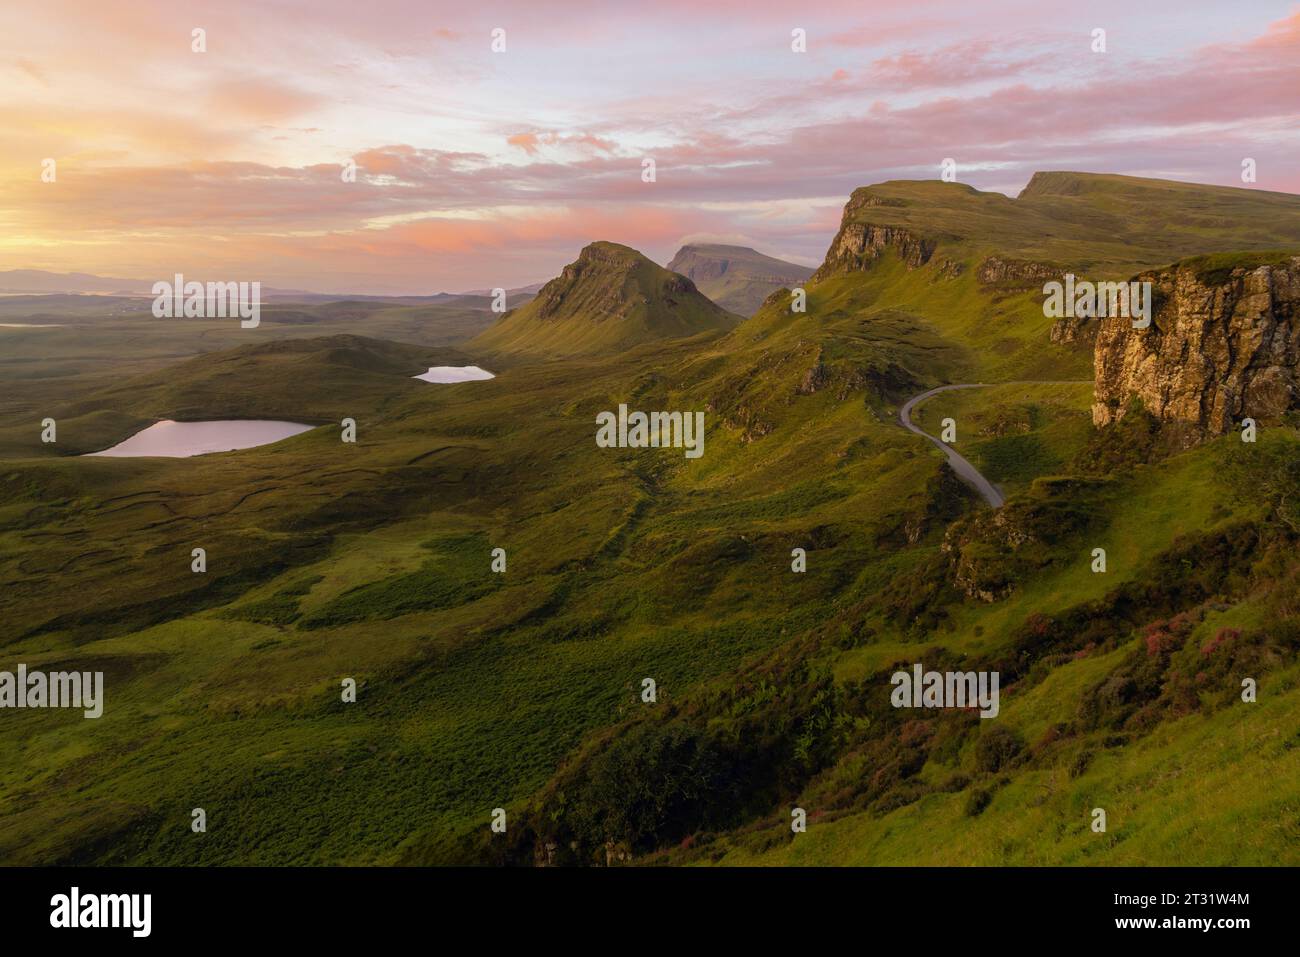 Le Quiraing, sur l'île de Skye, en Écosse, est un plateau de glissement de terrain, formé par une série de glissements de terrain il y a des millions d'années. Banque D'Images